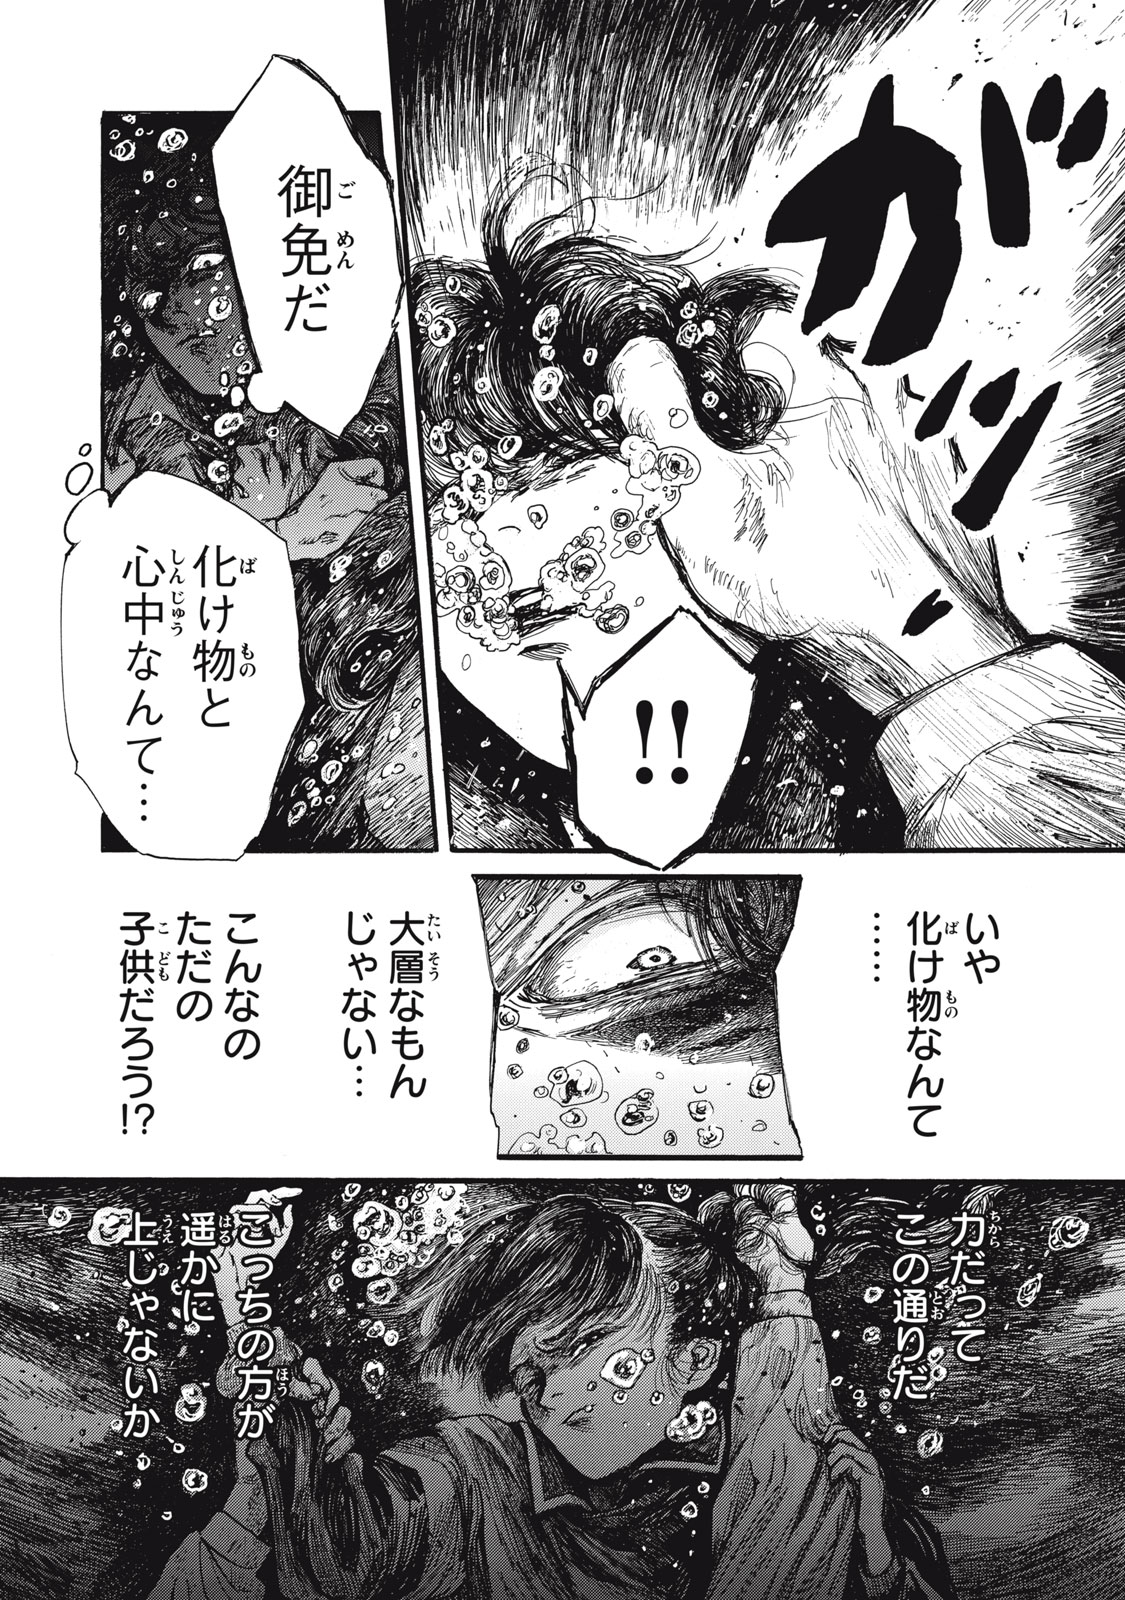 Watashi no Hara no Naka no Bakemono - Chapter 29 - Page 1